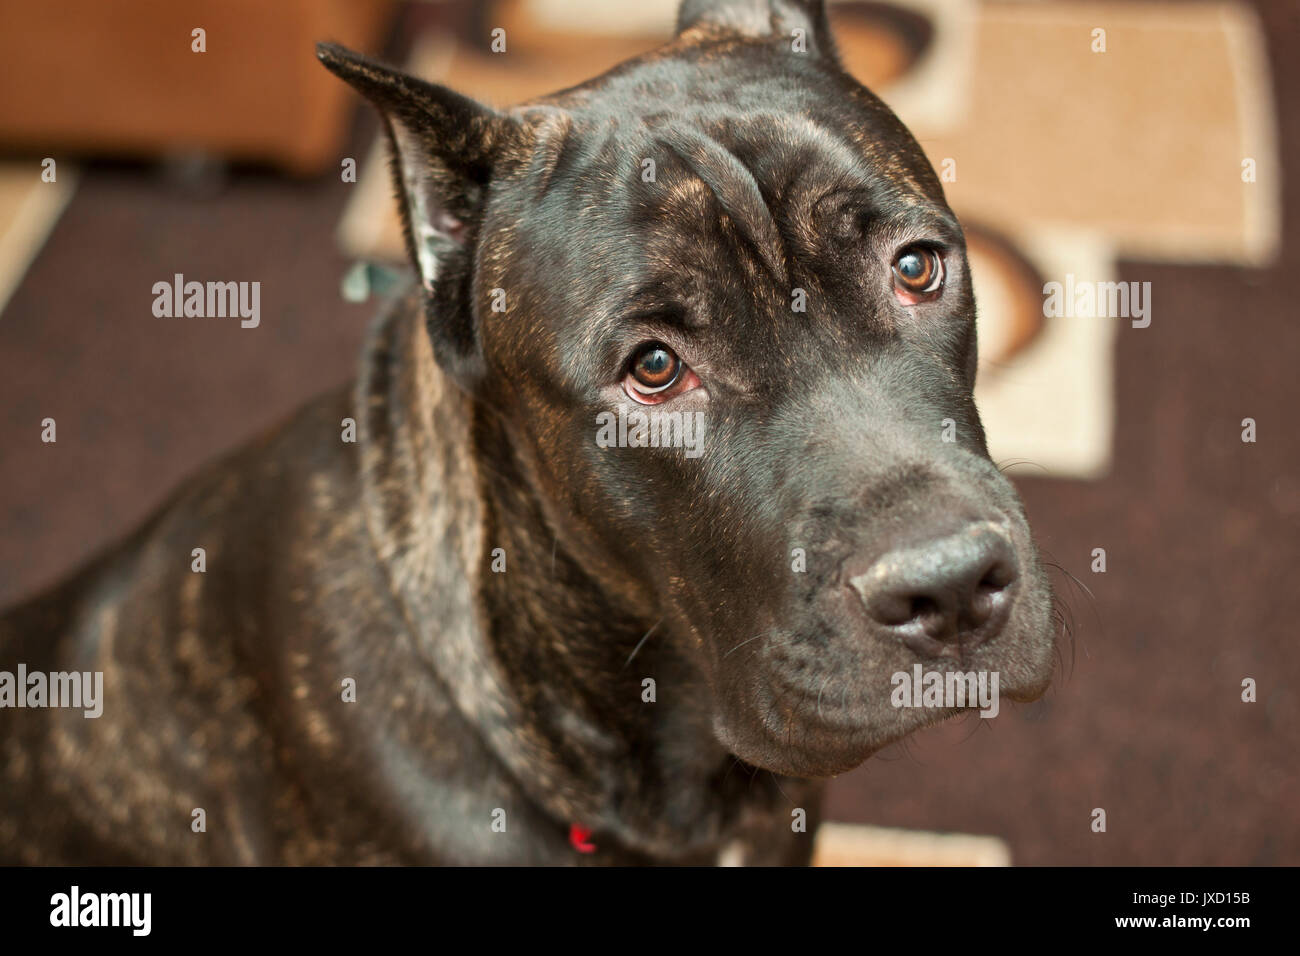 Cane Corso dog Stock Photo